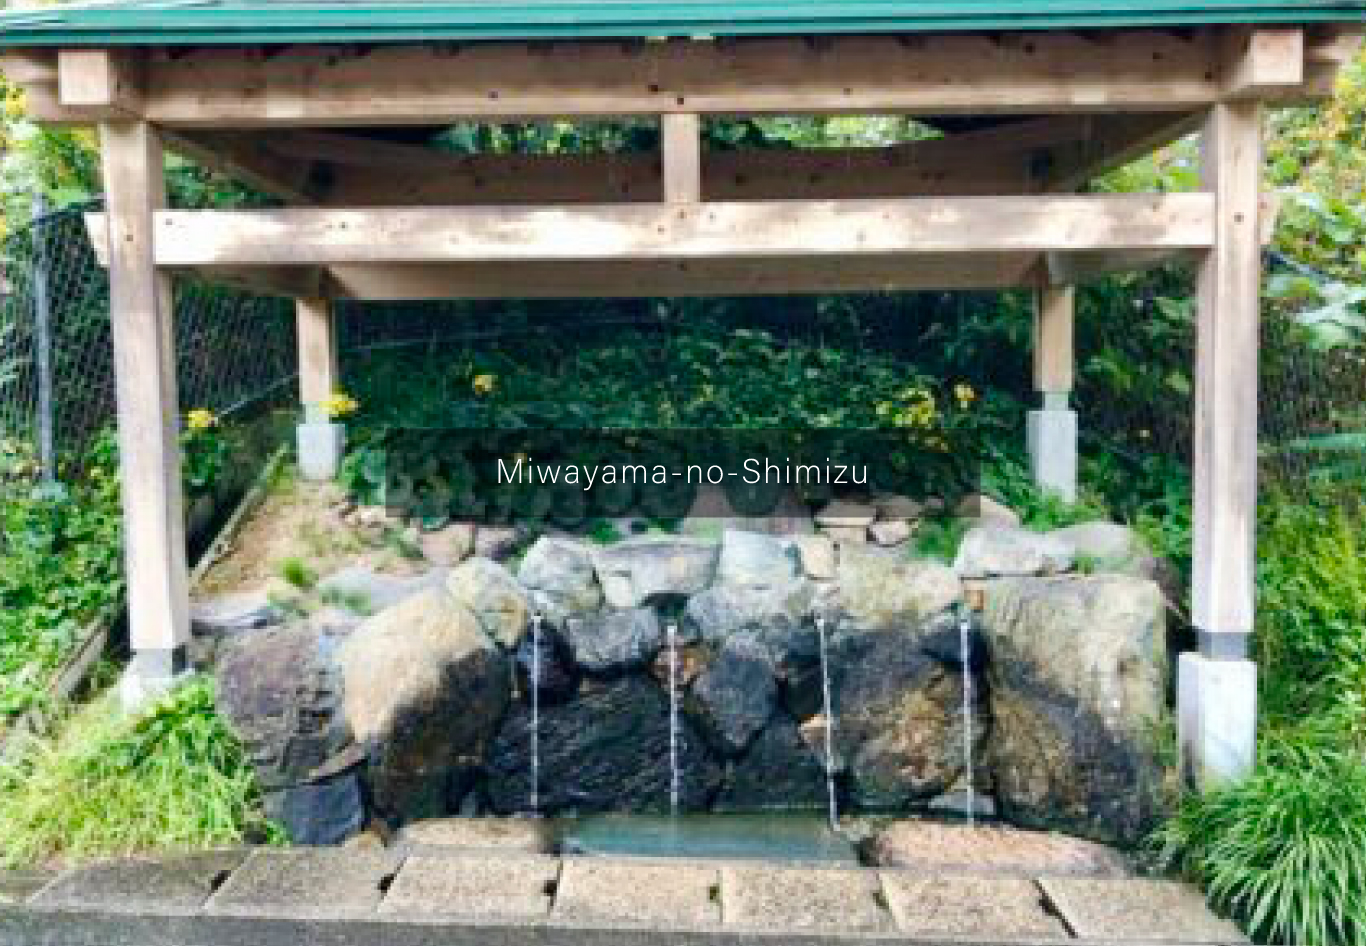 18. MIWAYAMA-NO-SHIMIZU SPRING